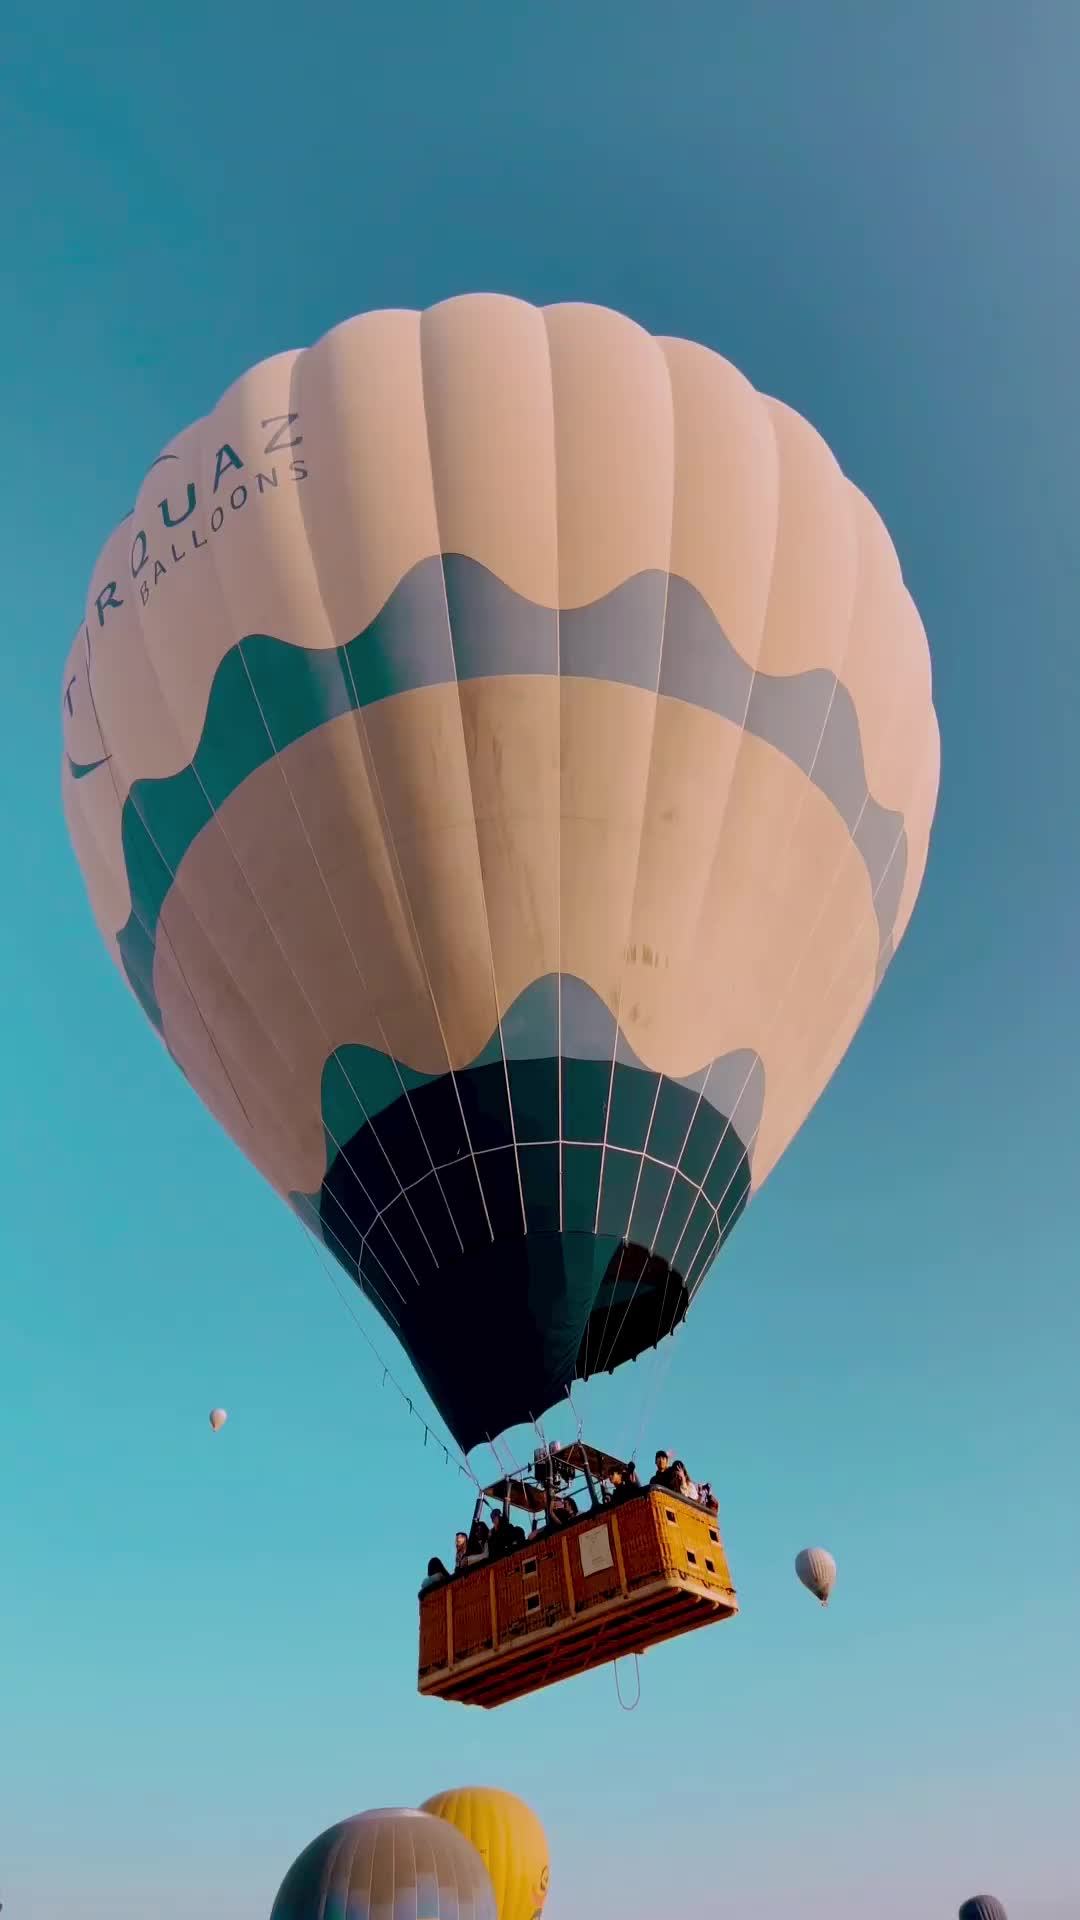 Hot Air Balloon Adventure in Love Valley, Cappadocia